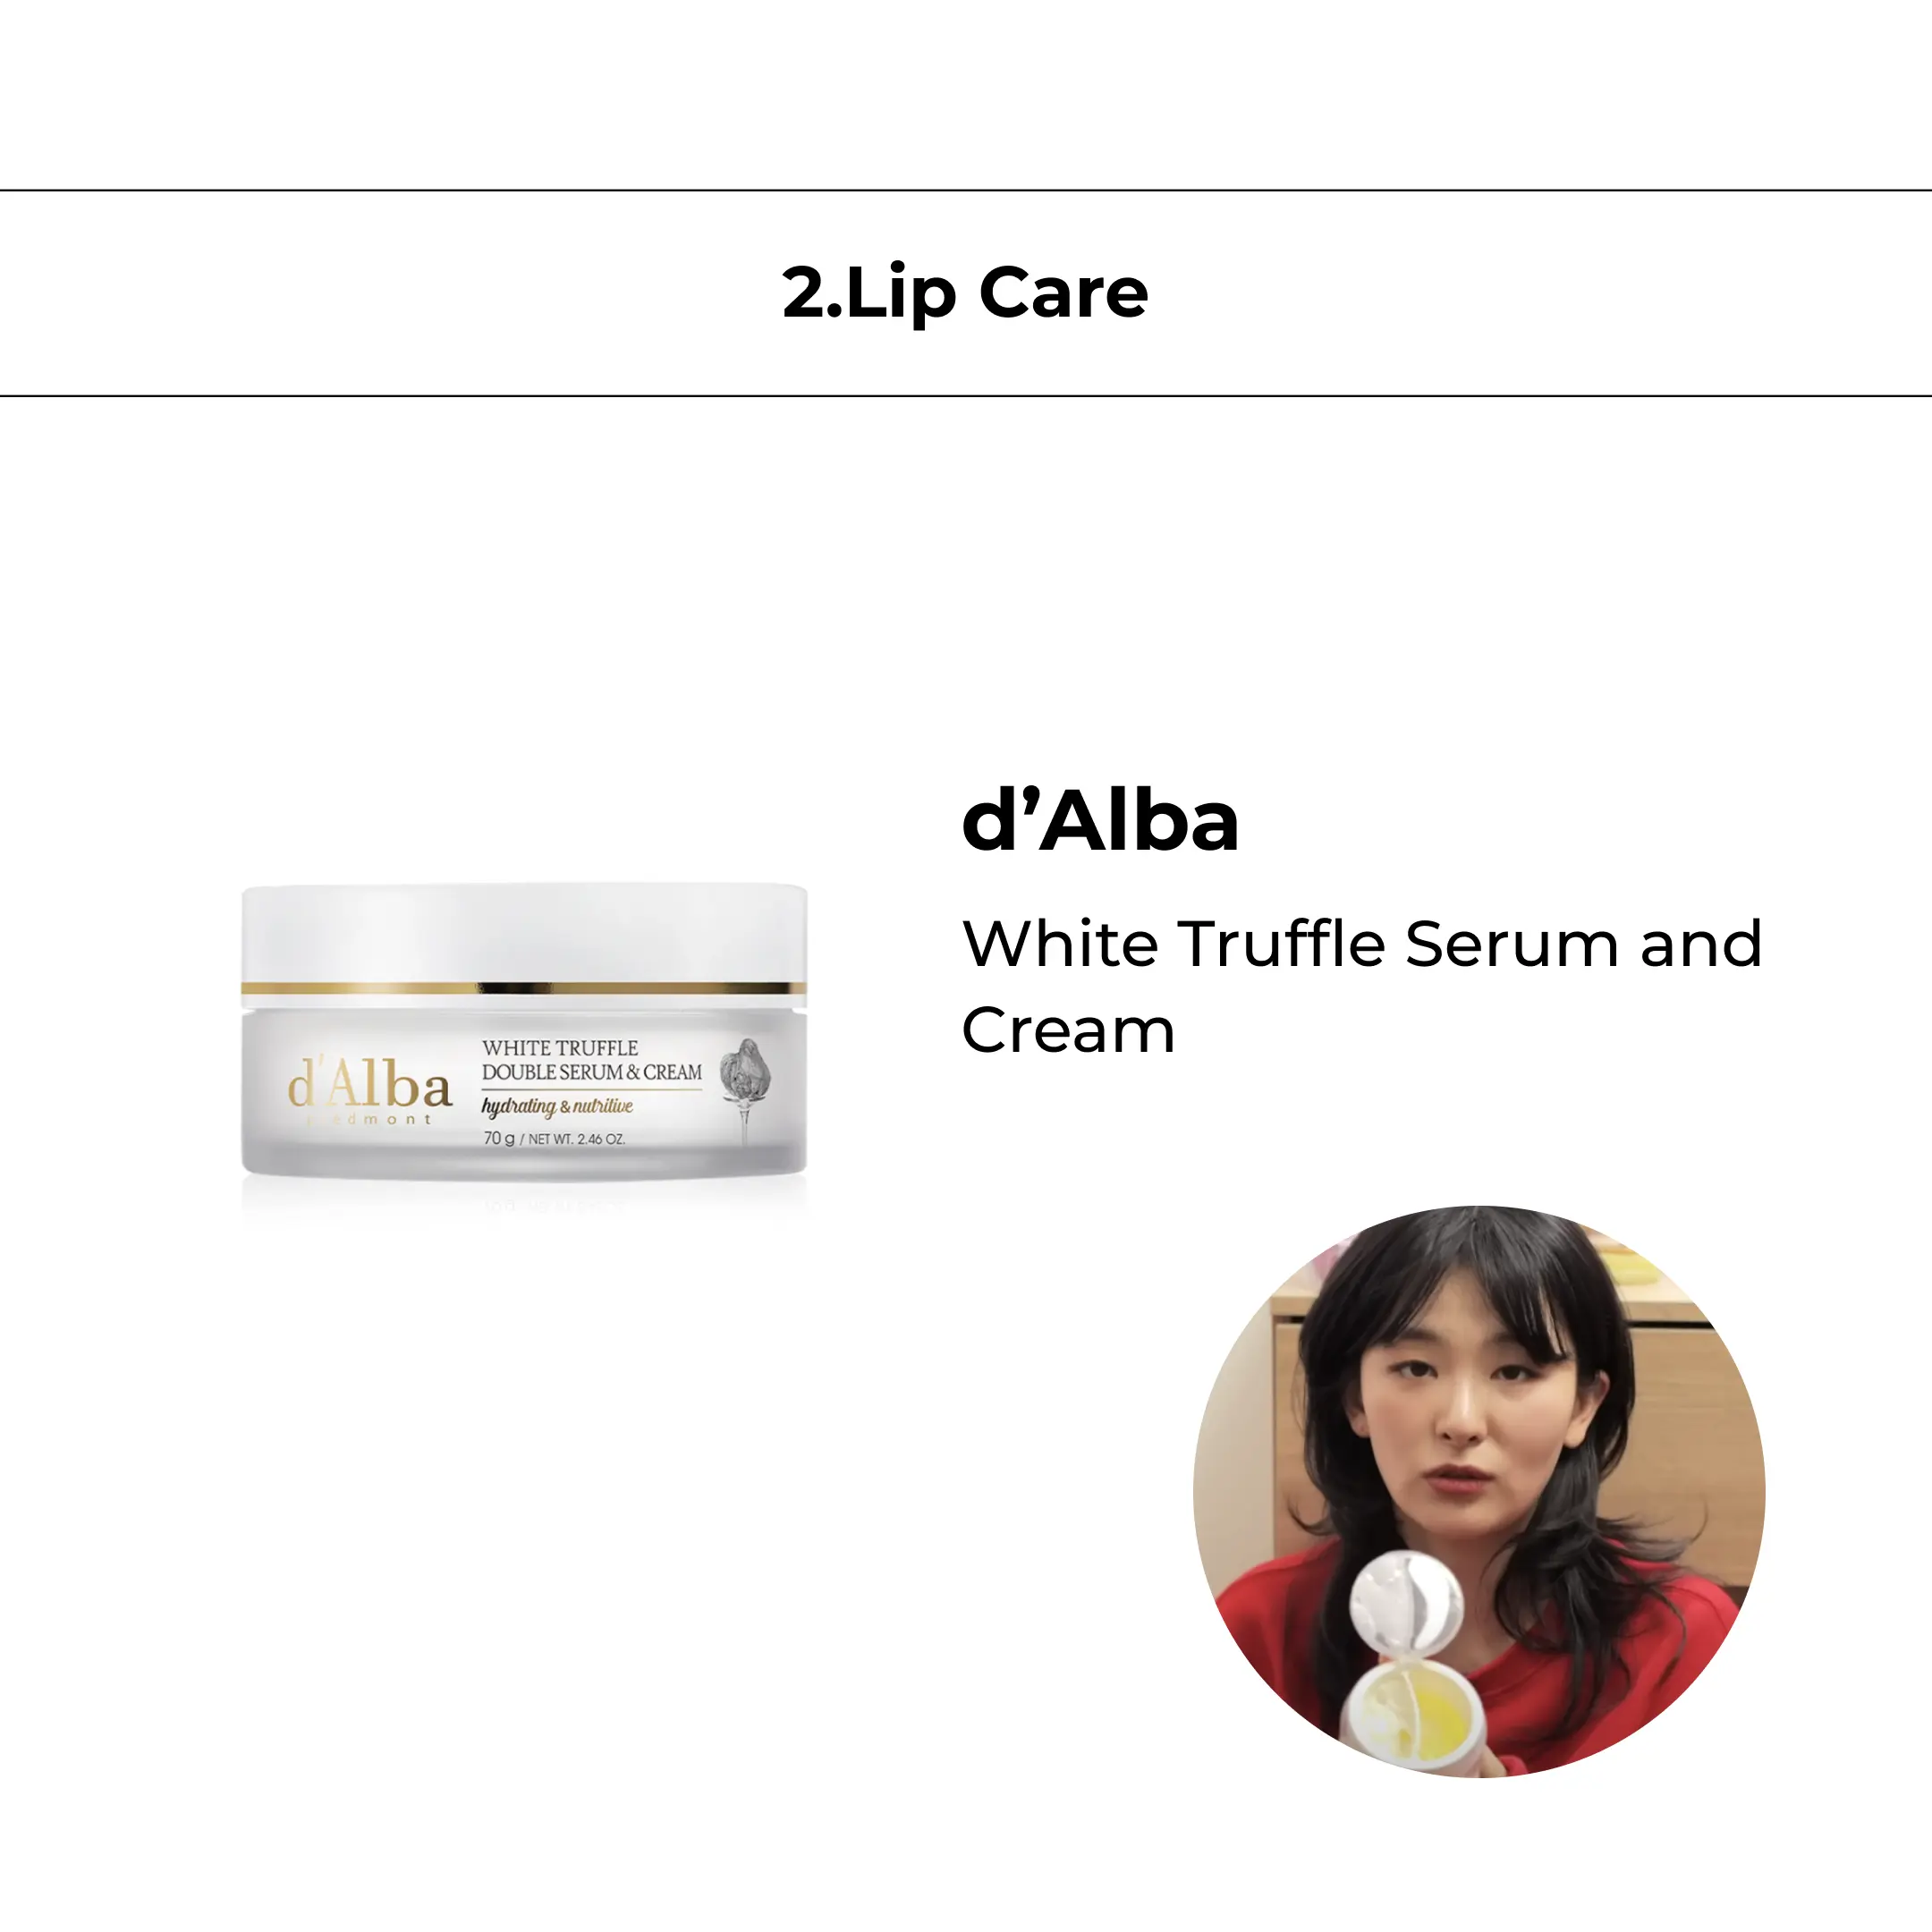 d'Alba White Truffle Serum and Cream